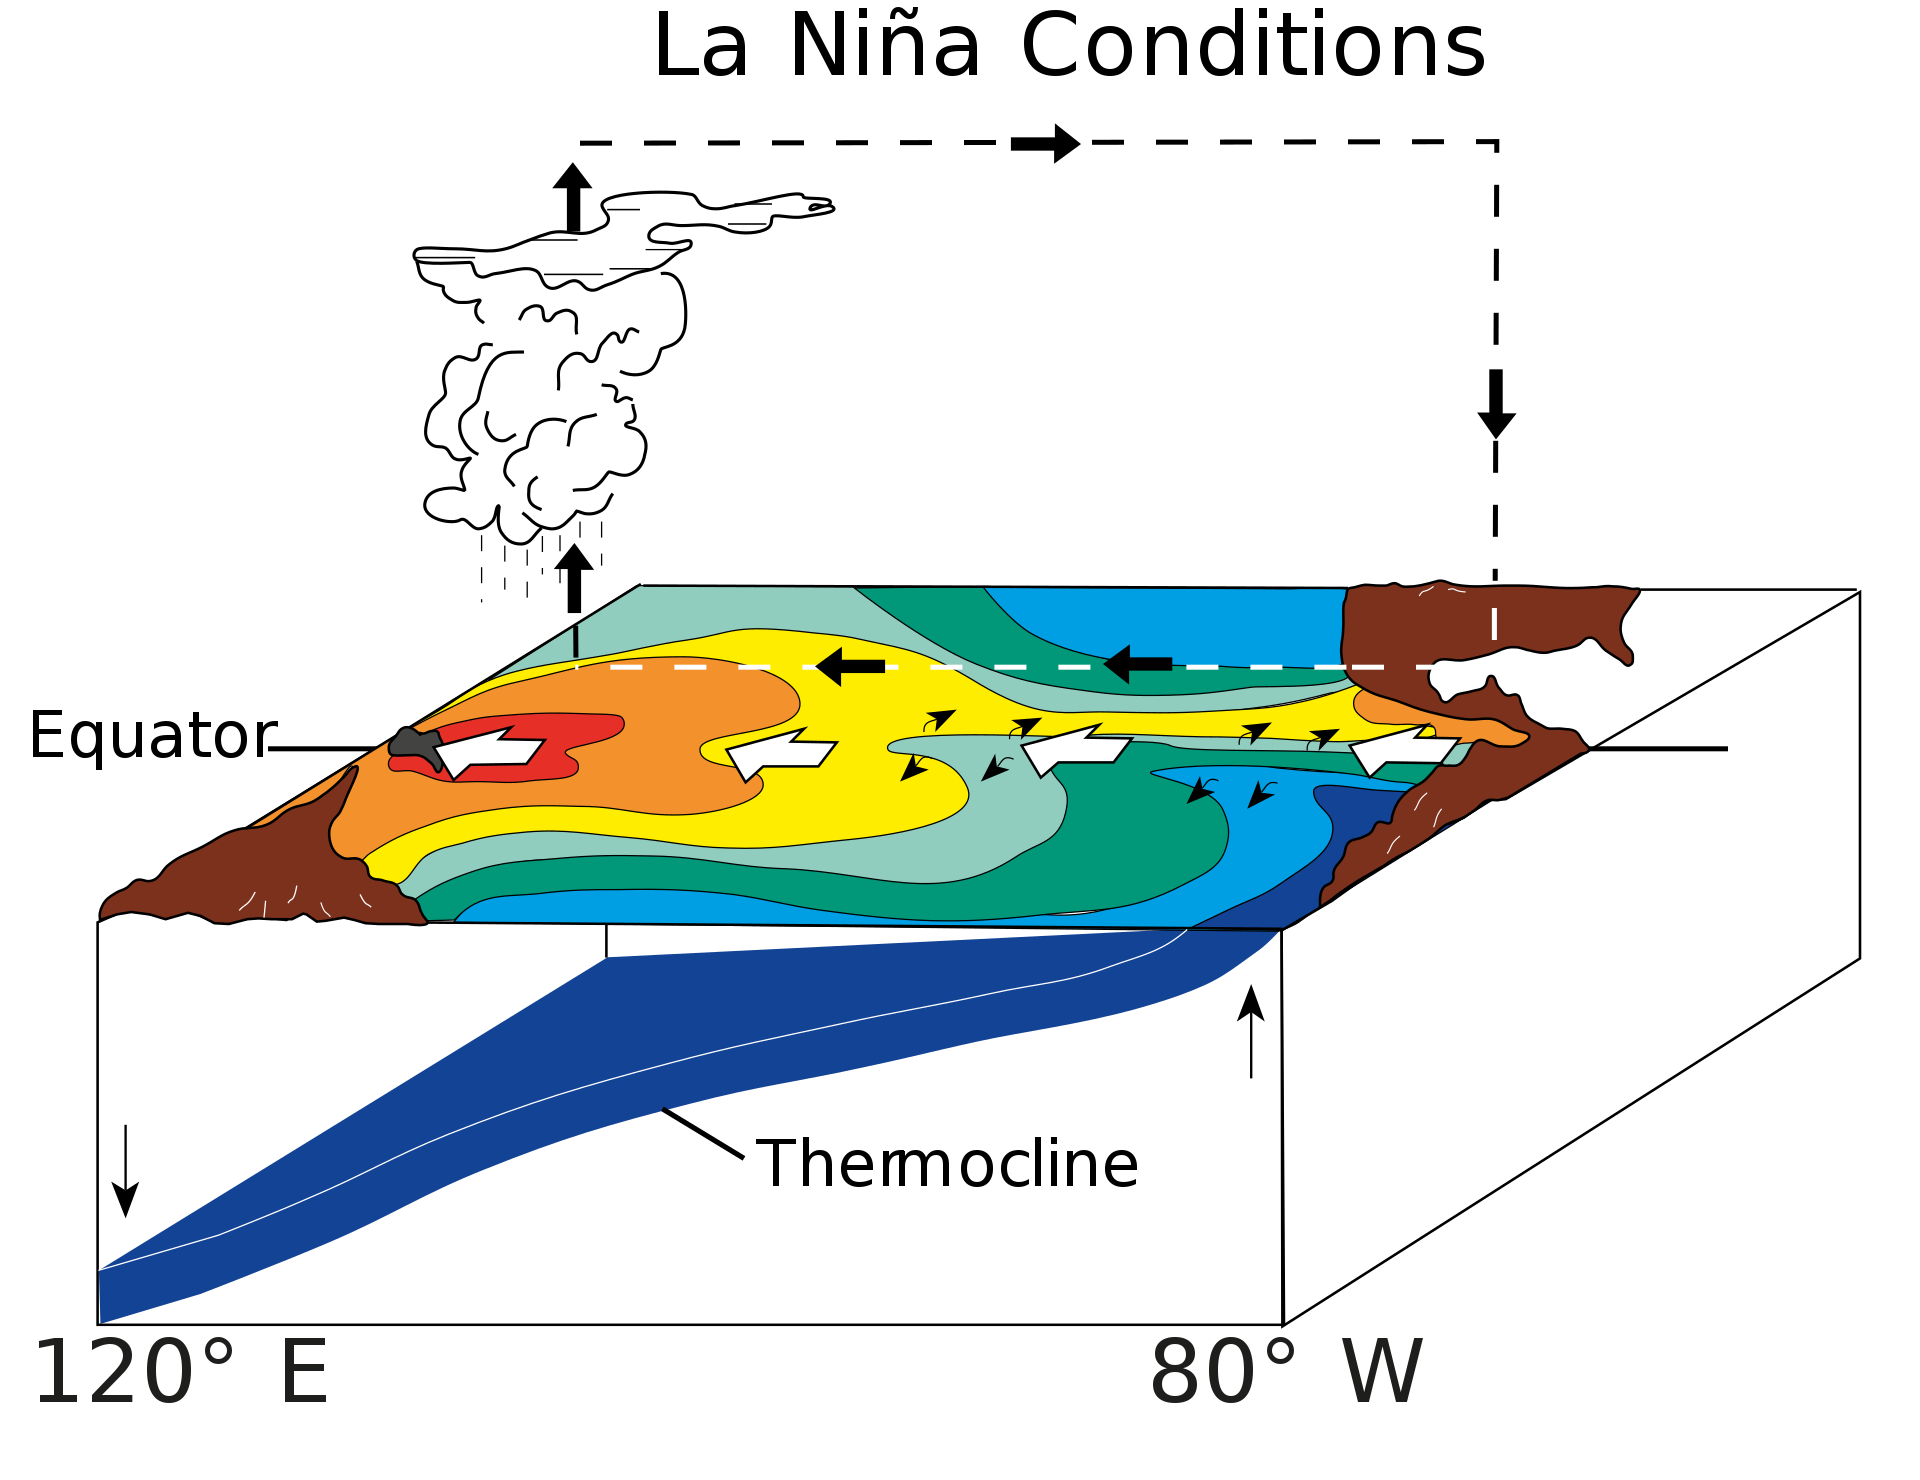 Условия образования Ла-Нинья: тёплые воды сдвигаются западнее, чем обычно. Инфографика © Wikipedia / Fred the Oyster